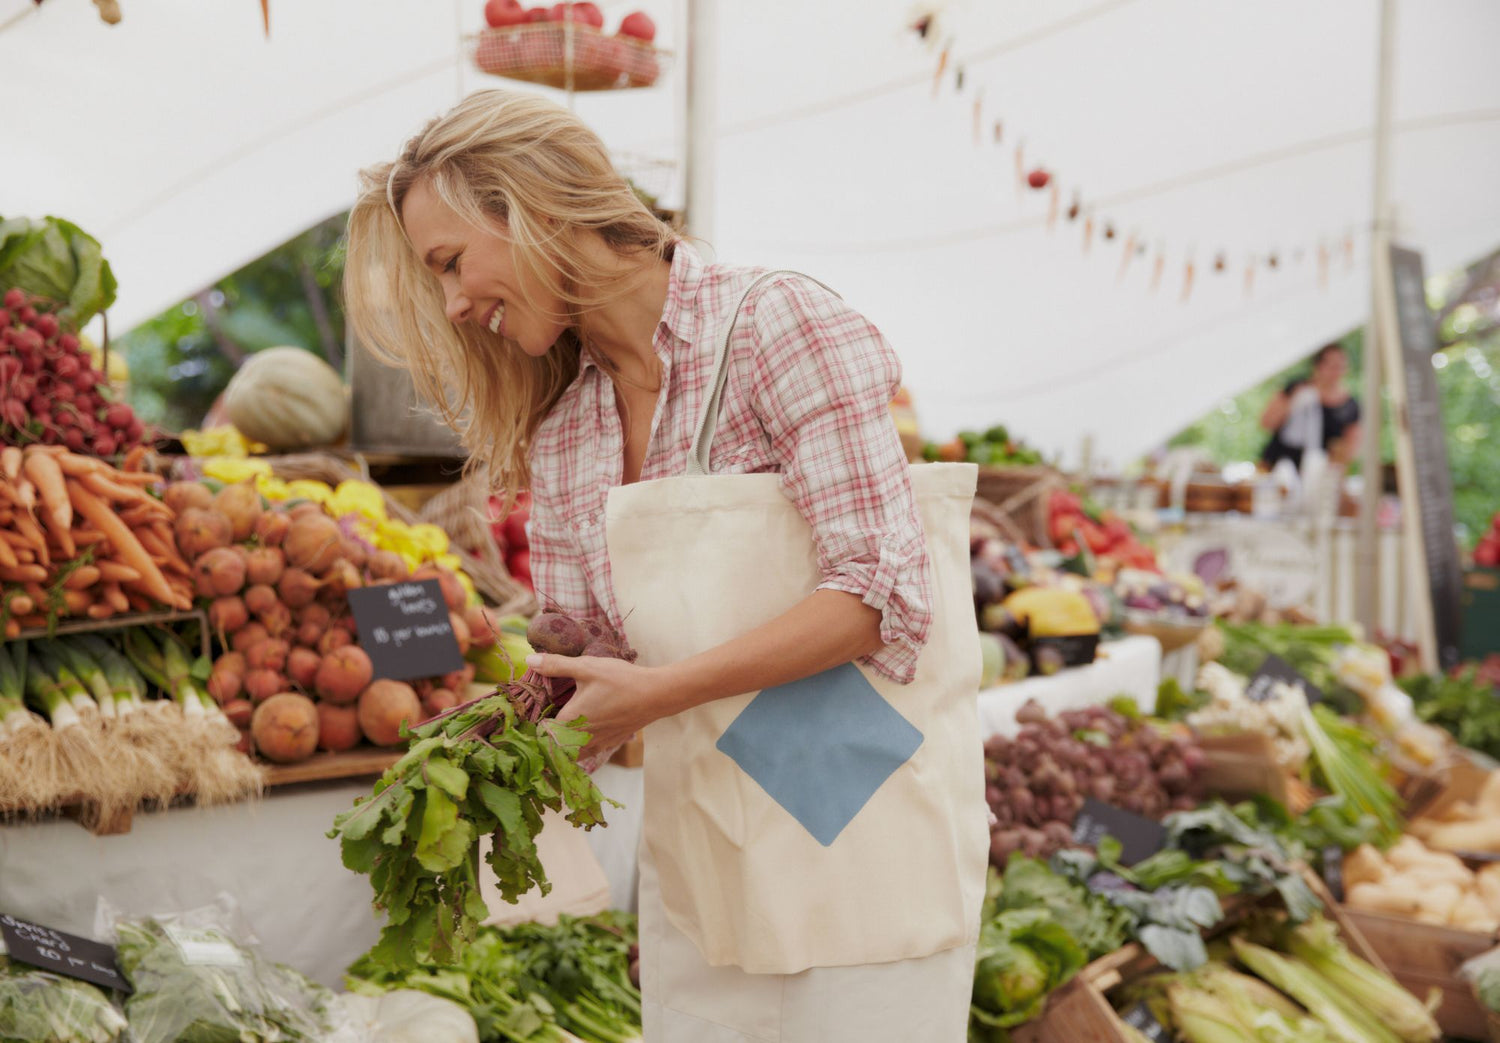 Women's Farmer's Market Guide